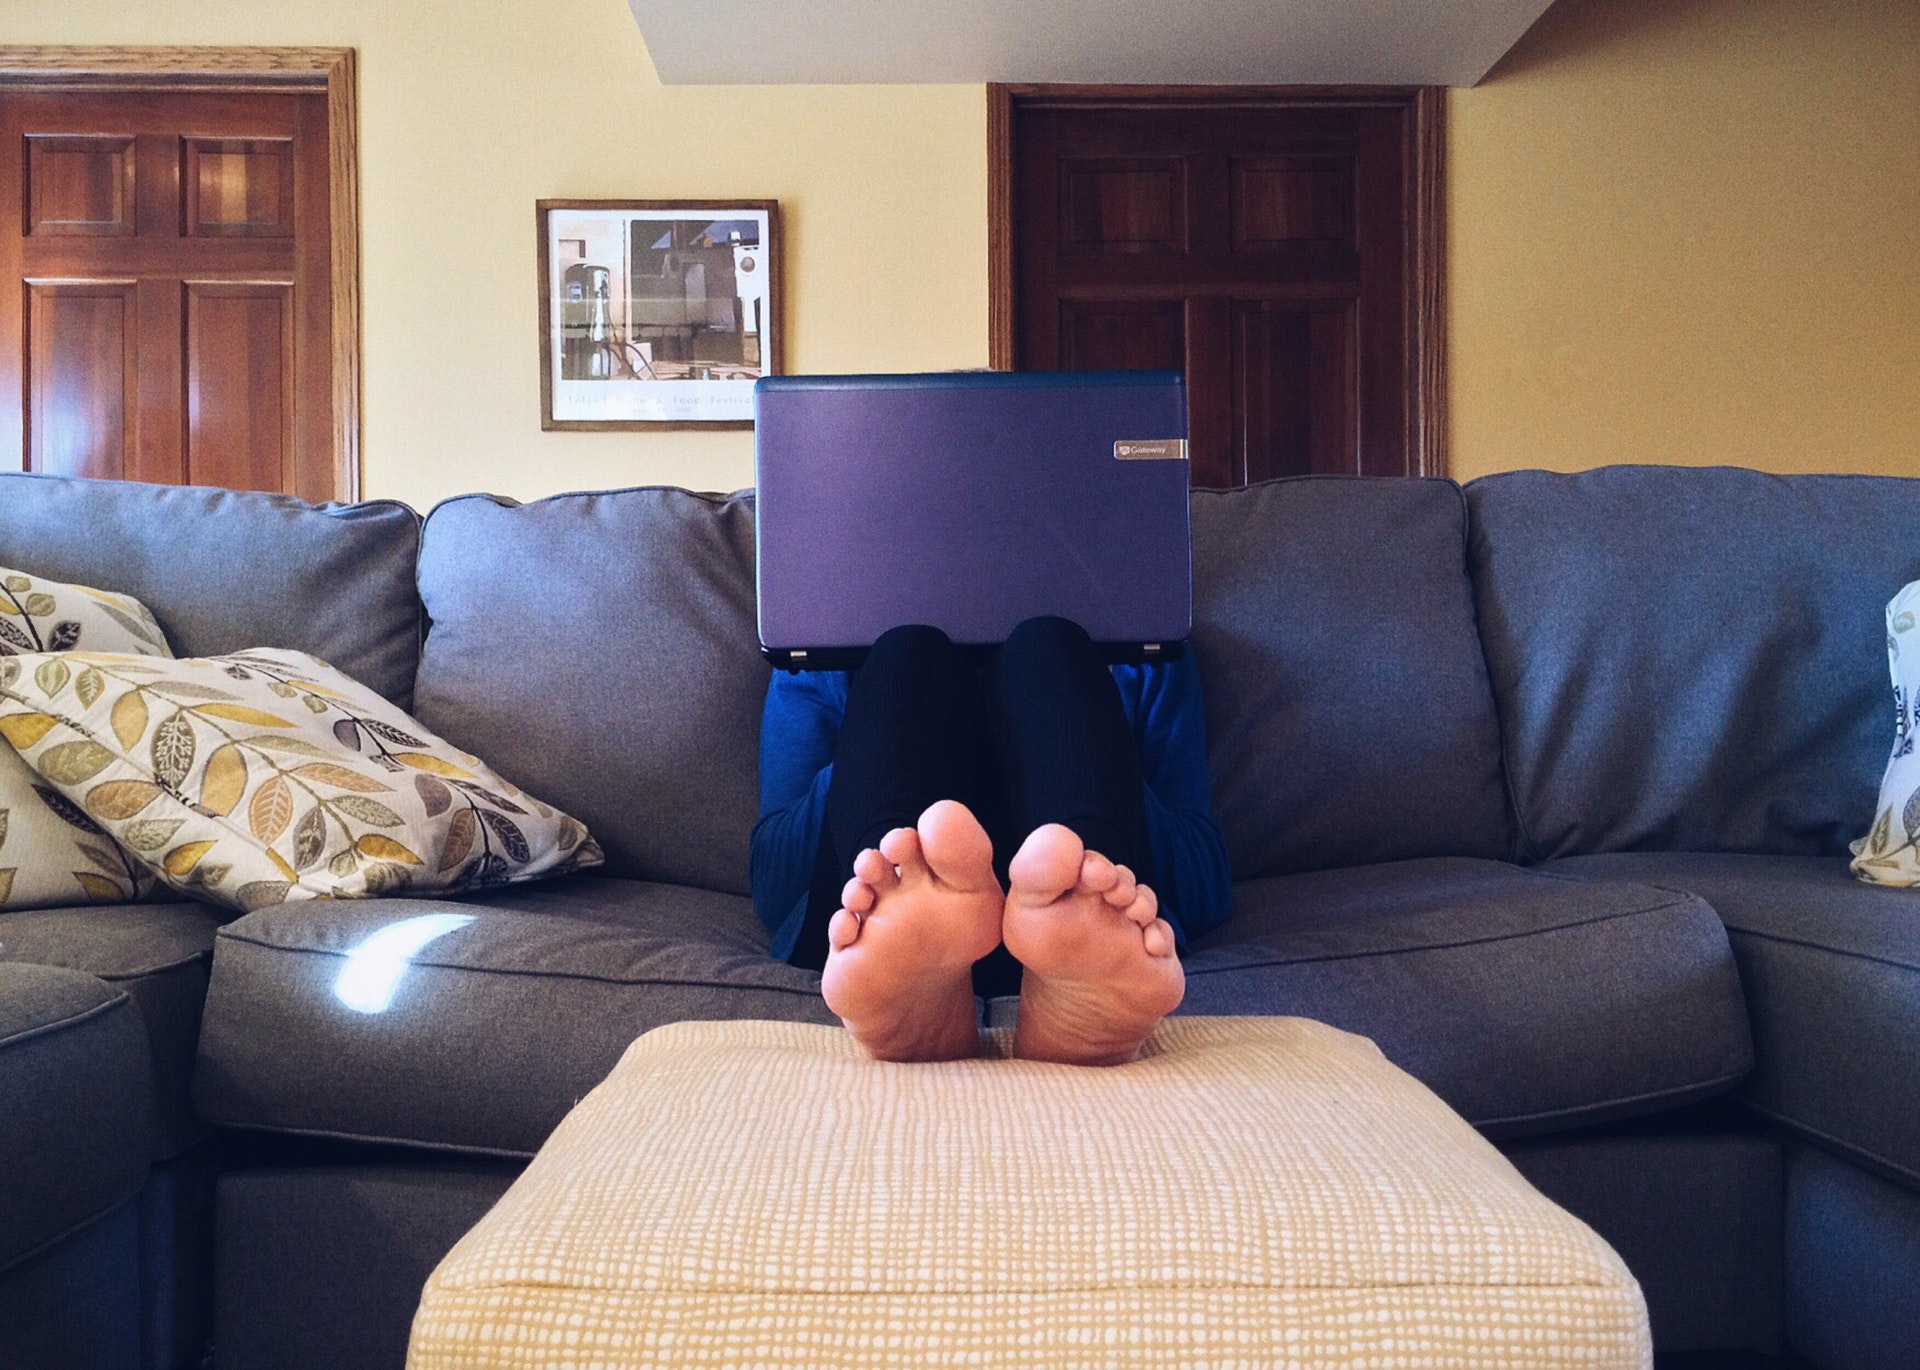 Pessoa sentada em um sofá com um computador no colo. Imagem ilustrativa do texto pequenos negócios rentáveis.